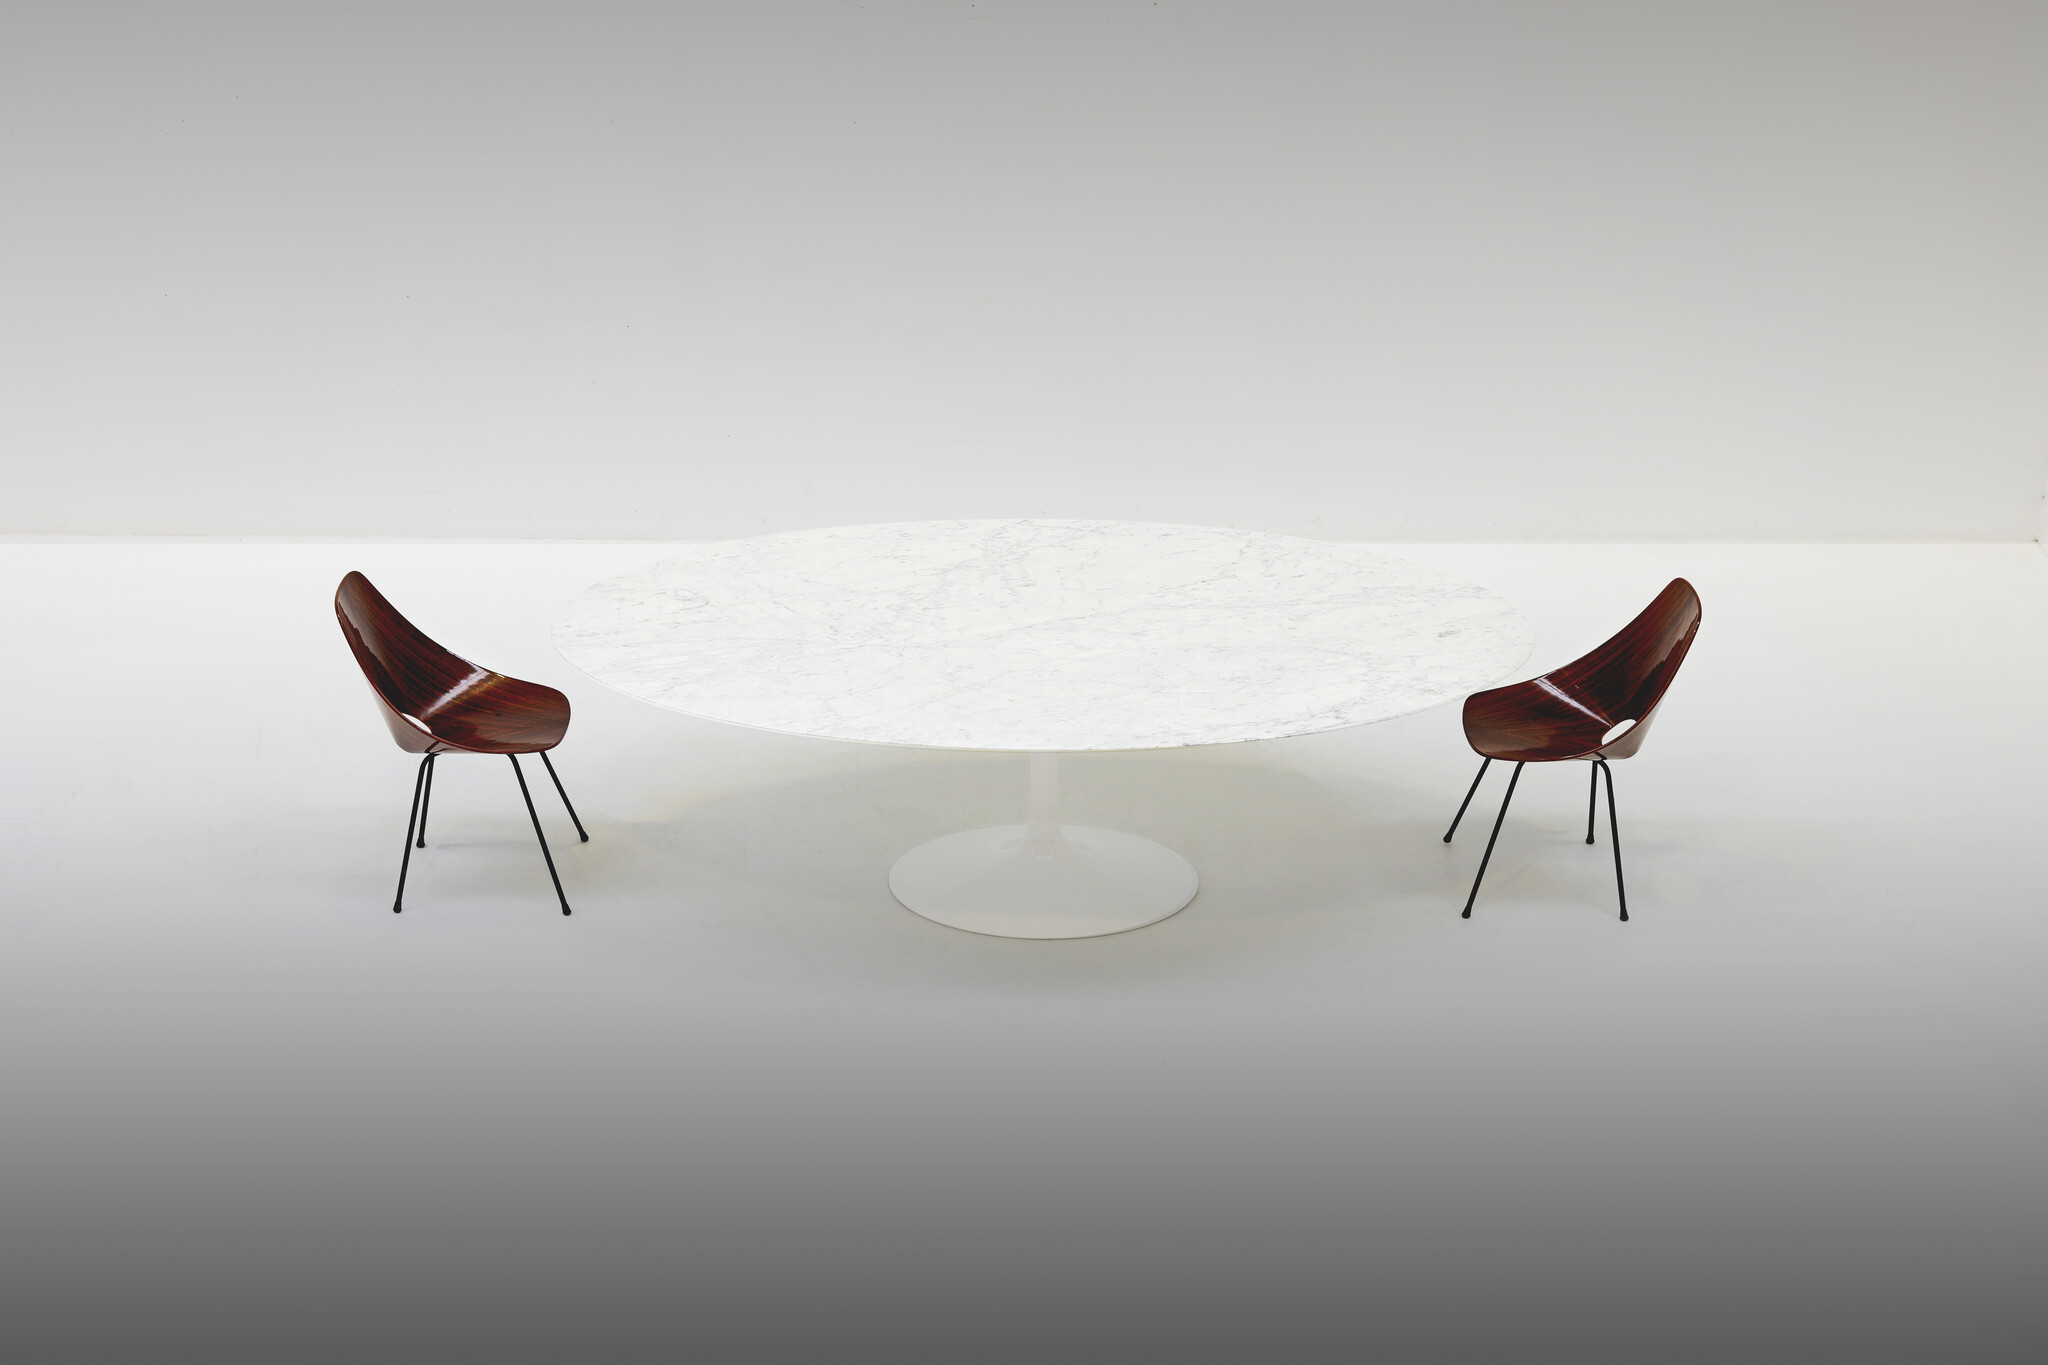 Marmeren Knoll Tulip ovale tafel ontworpen door Eero Saarinen